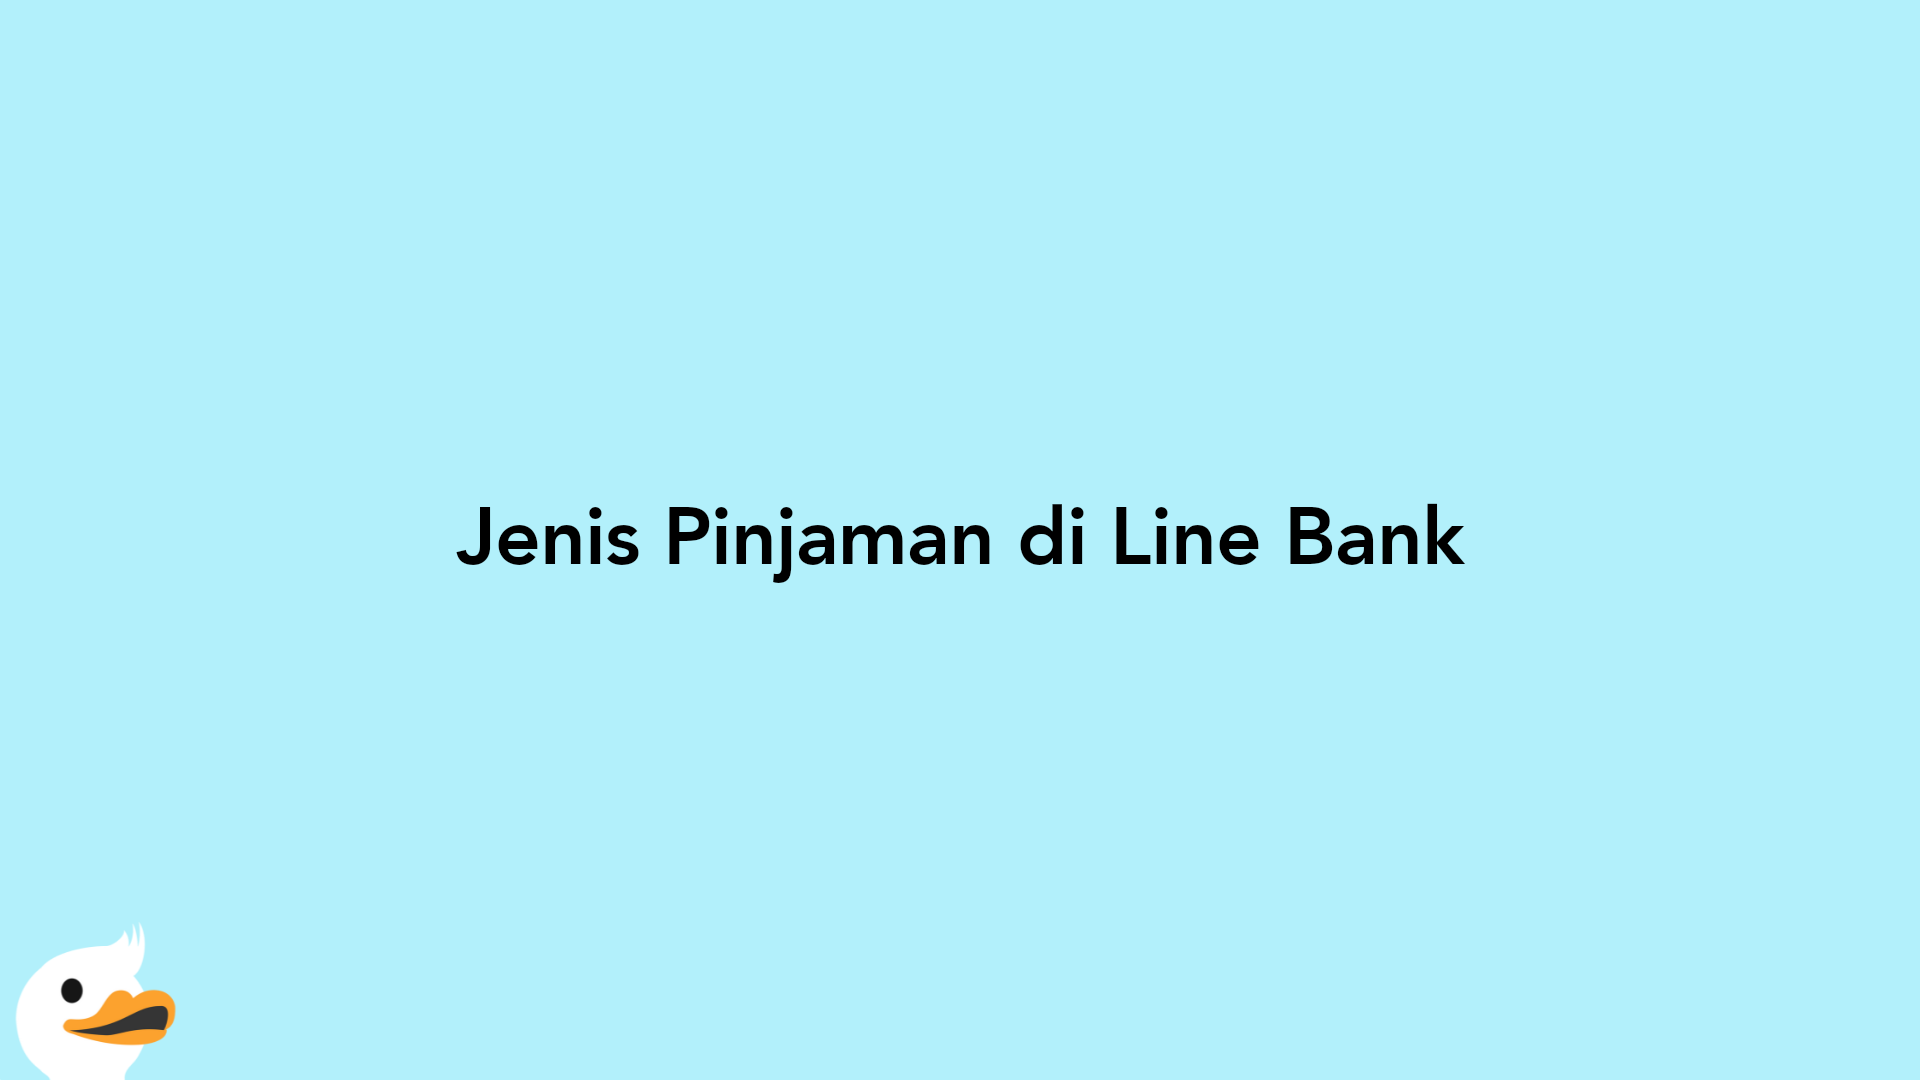 Jenis Pinjaman di Line Bank